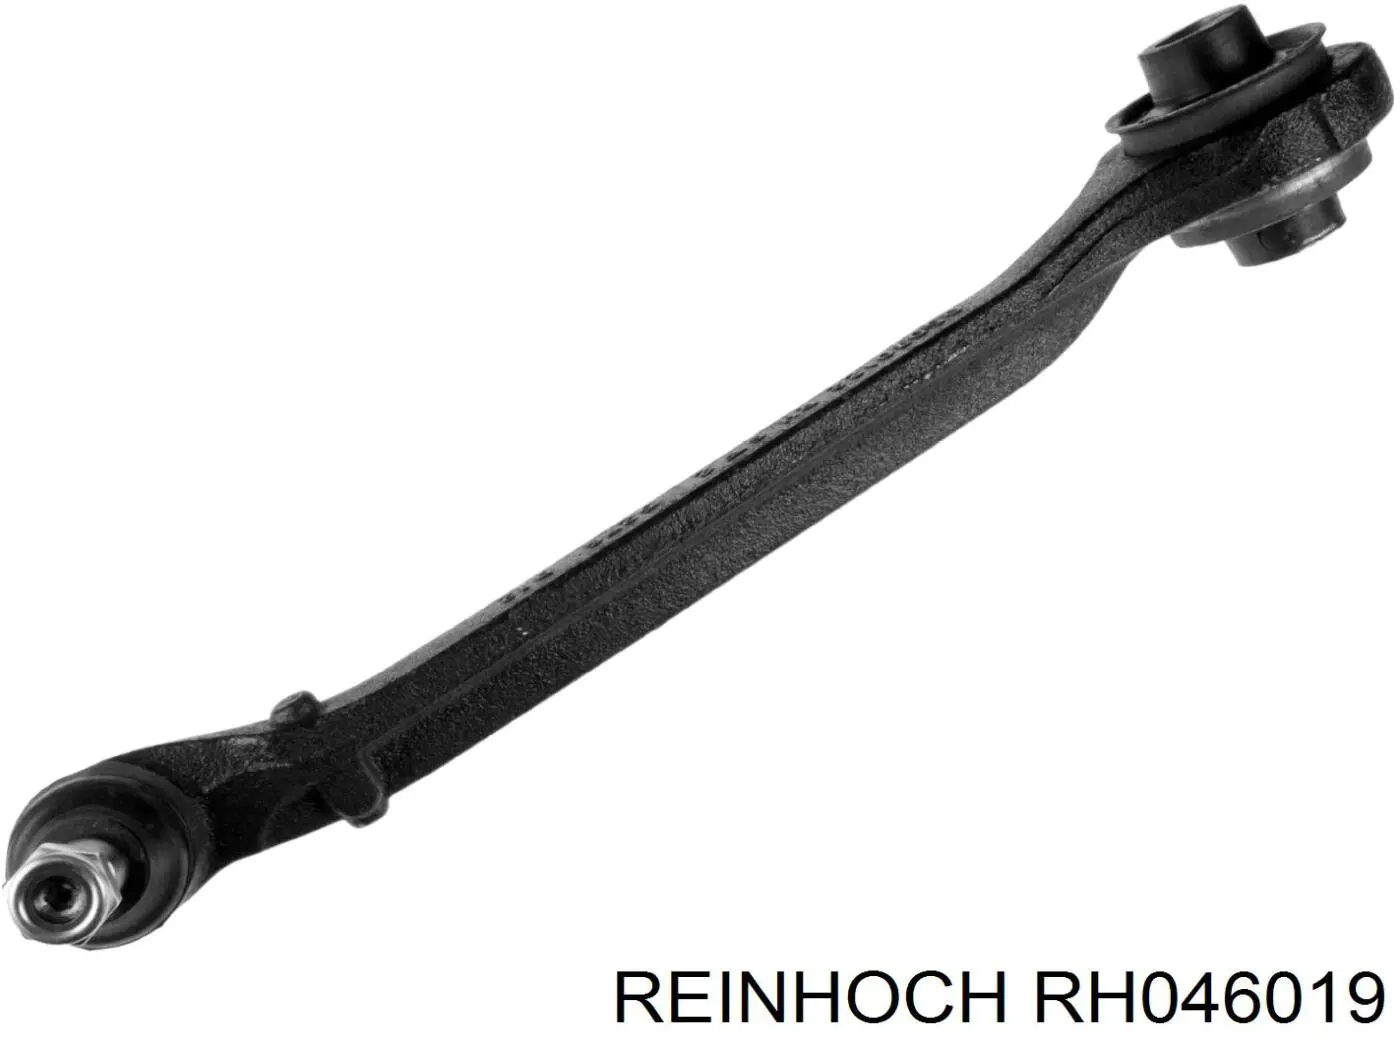 RH046019 Reinhoch barra oscilante, suspensión de ruedas delantera, inferior derecha